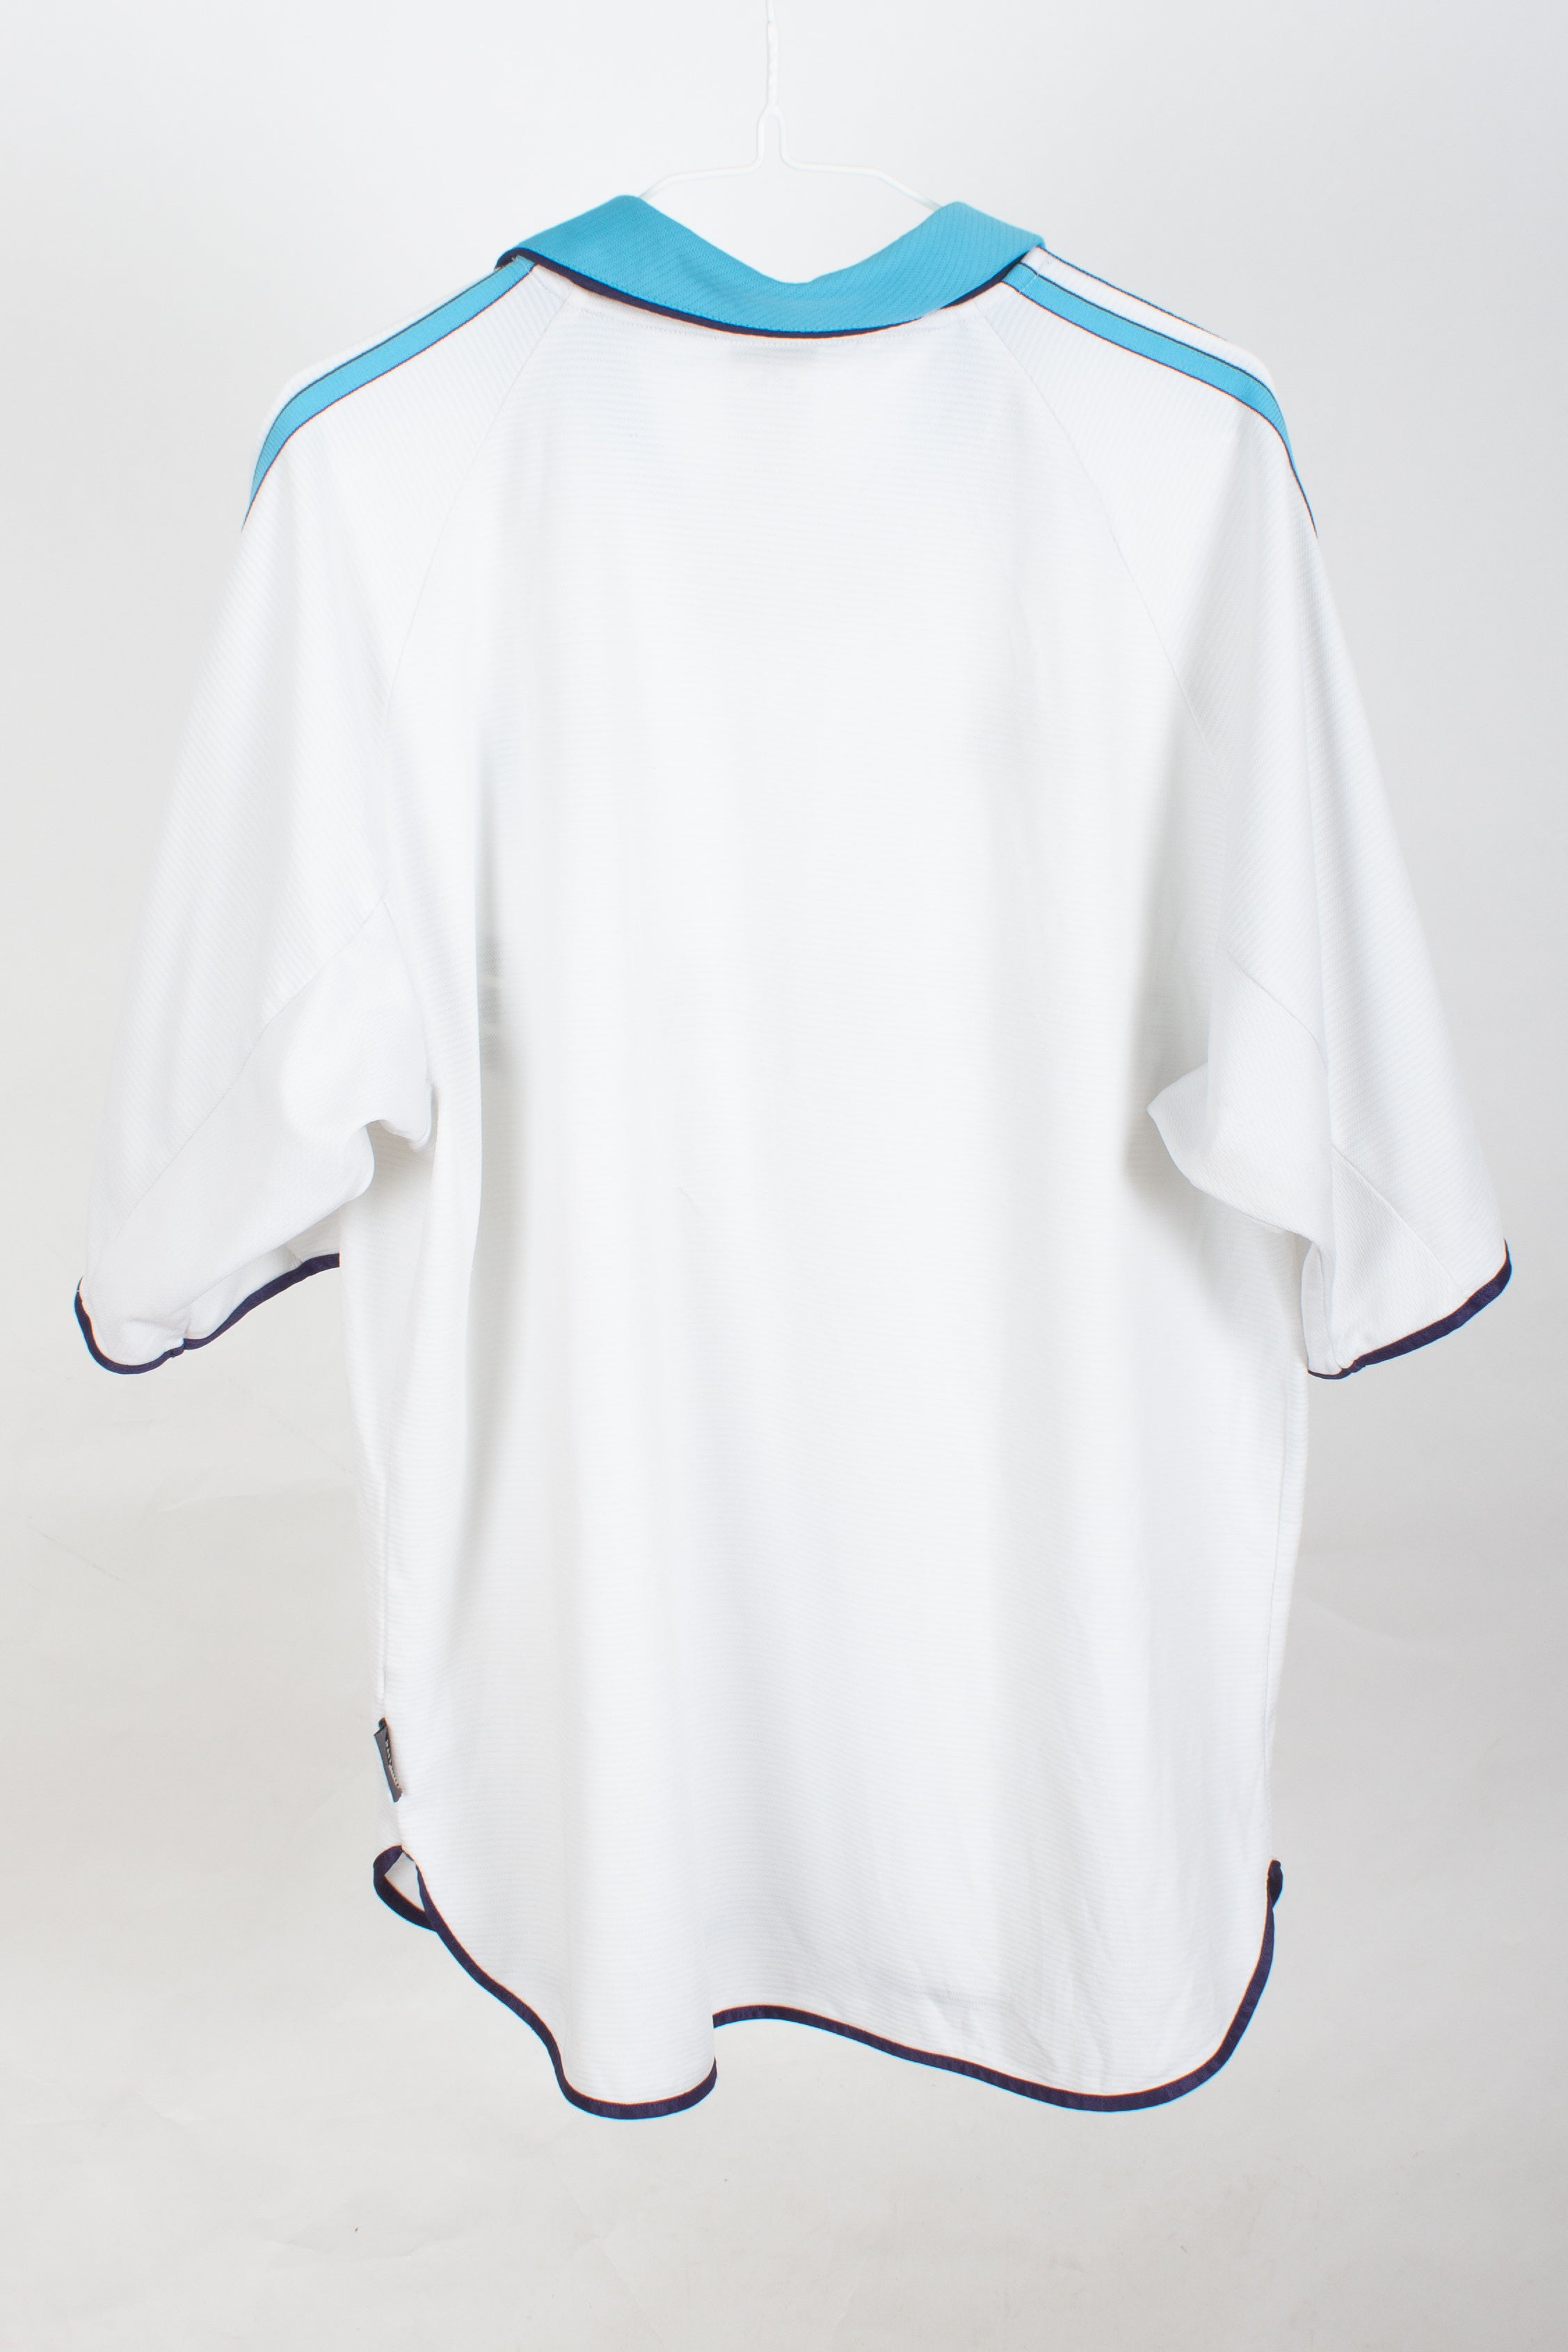 Olympique de Marseille 1999/00 Home Shirt (M)